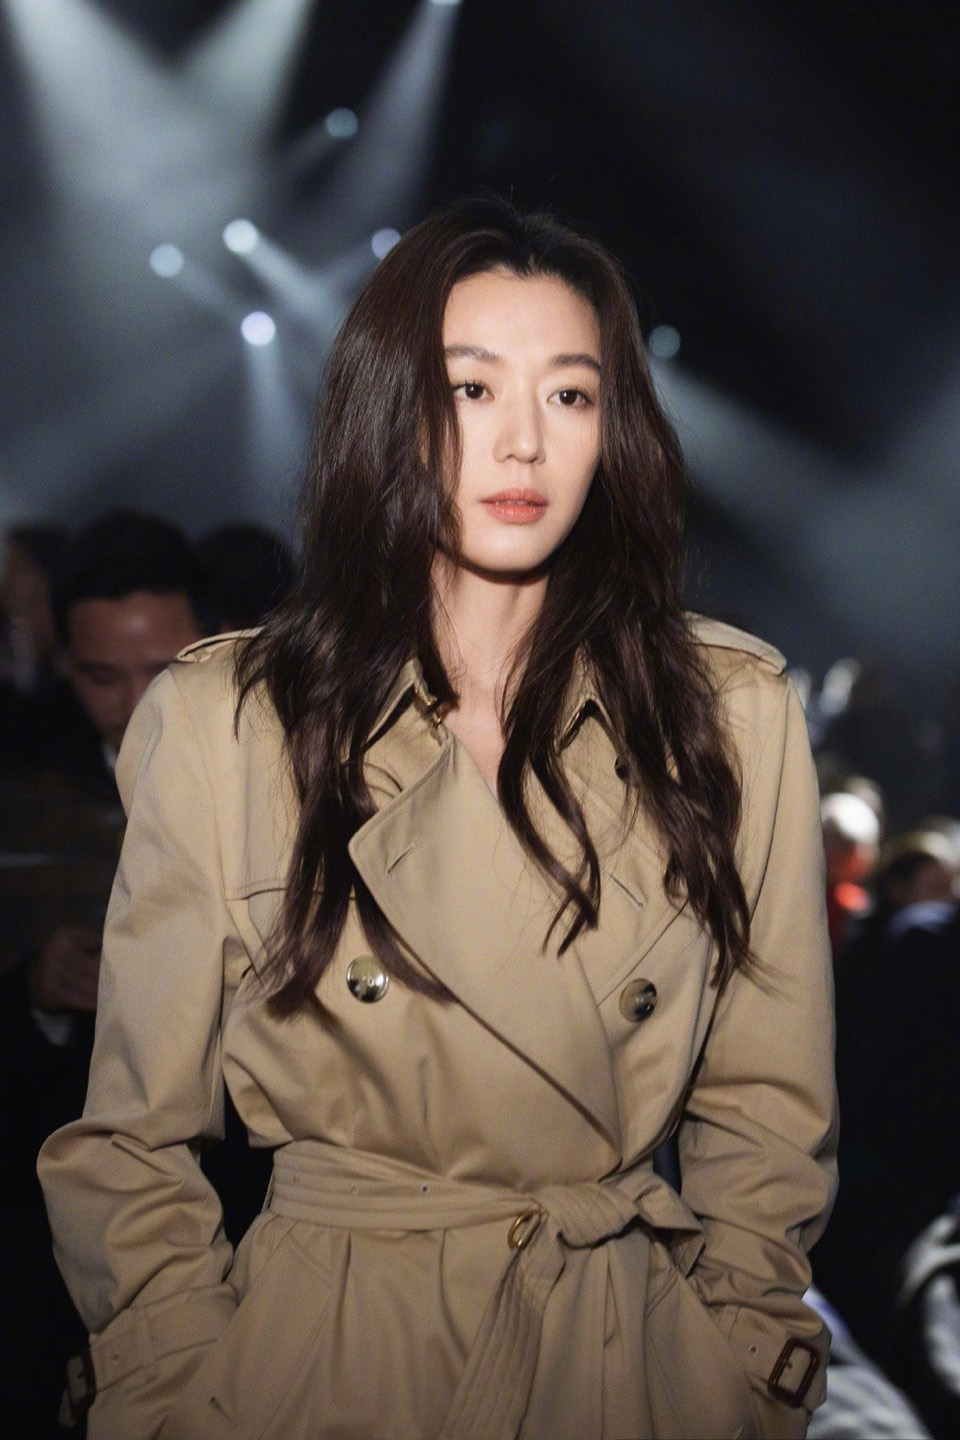 Jeon Ji Hyun wearing a trench coat is enough to create a fashion class ...